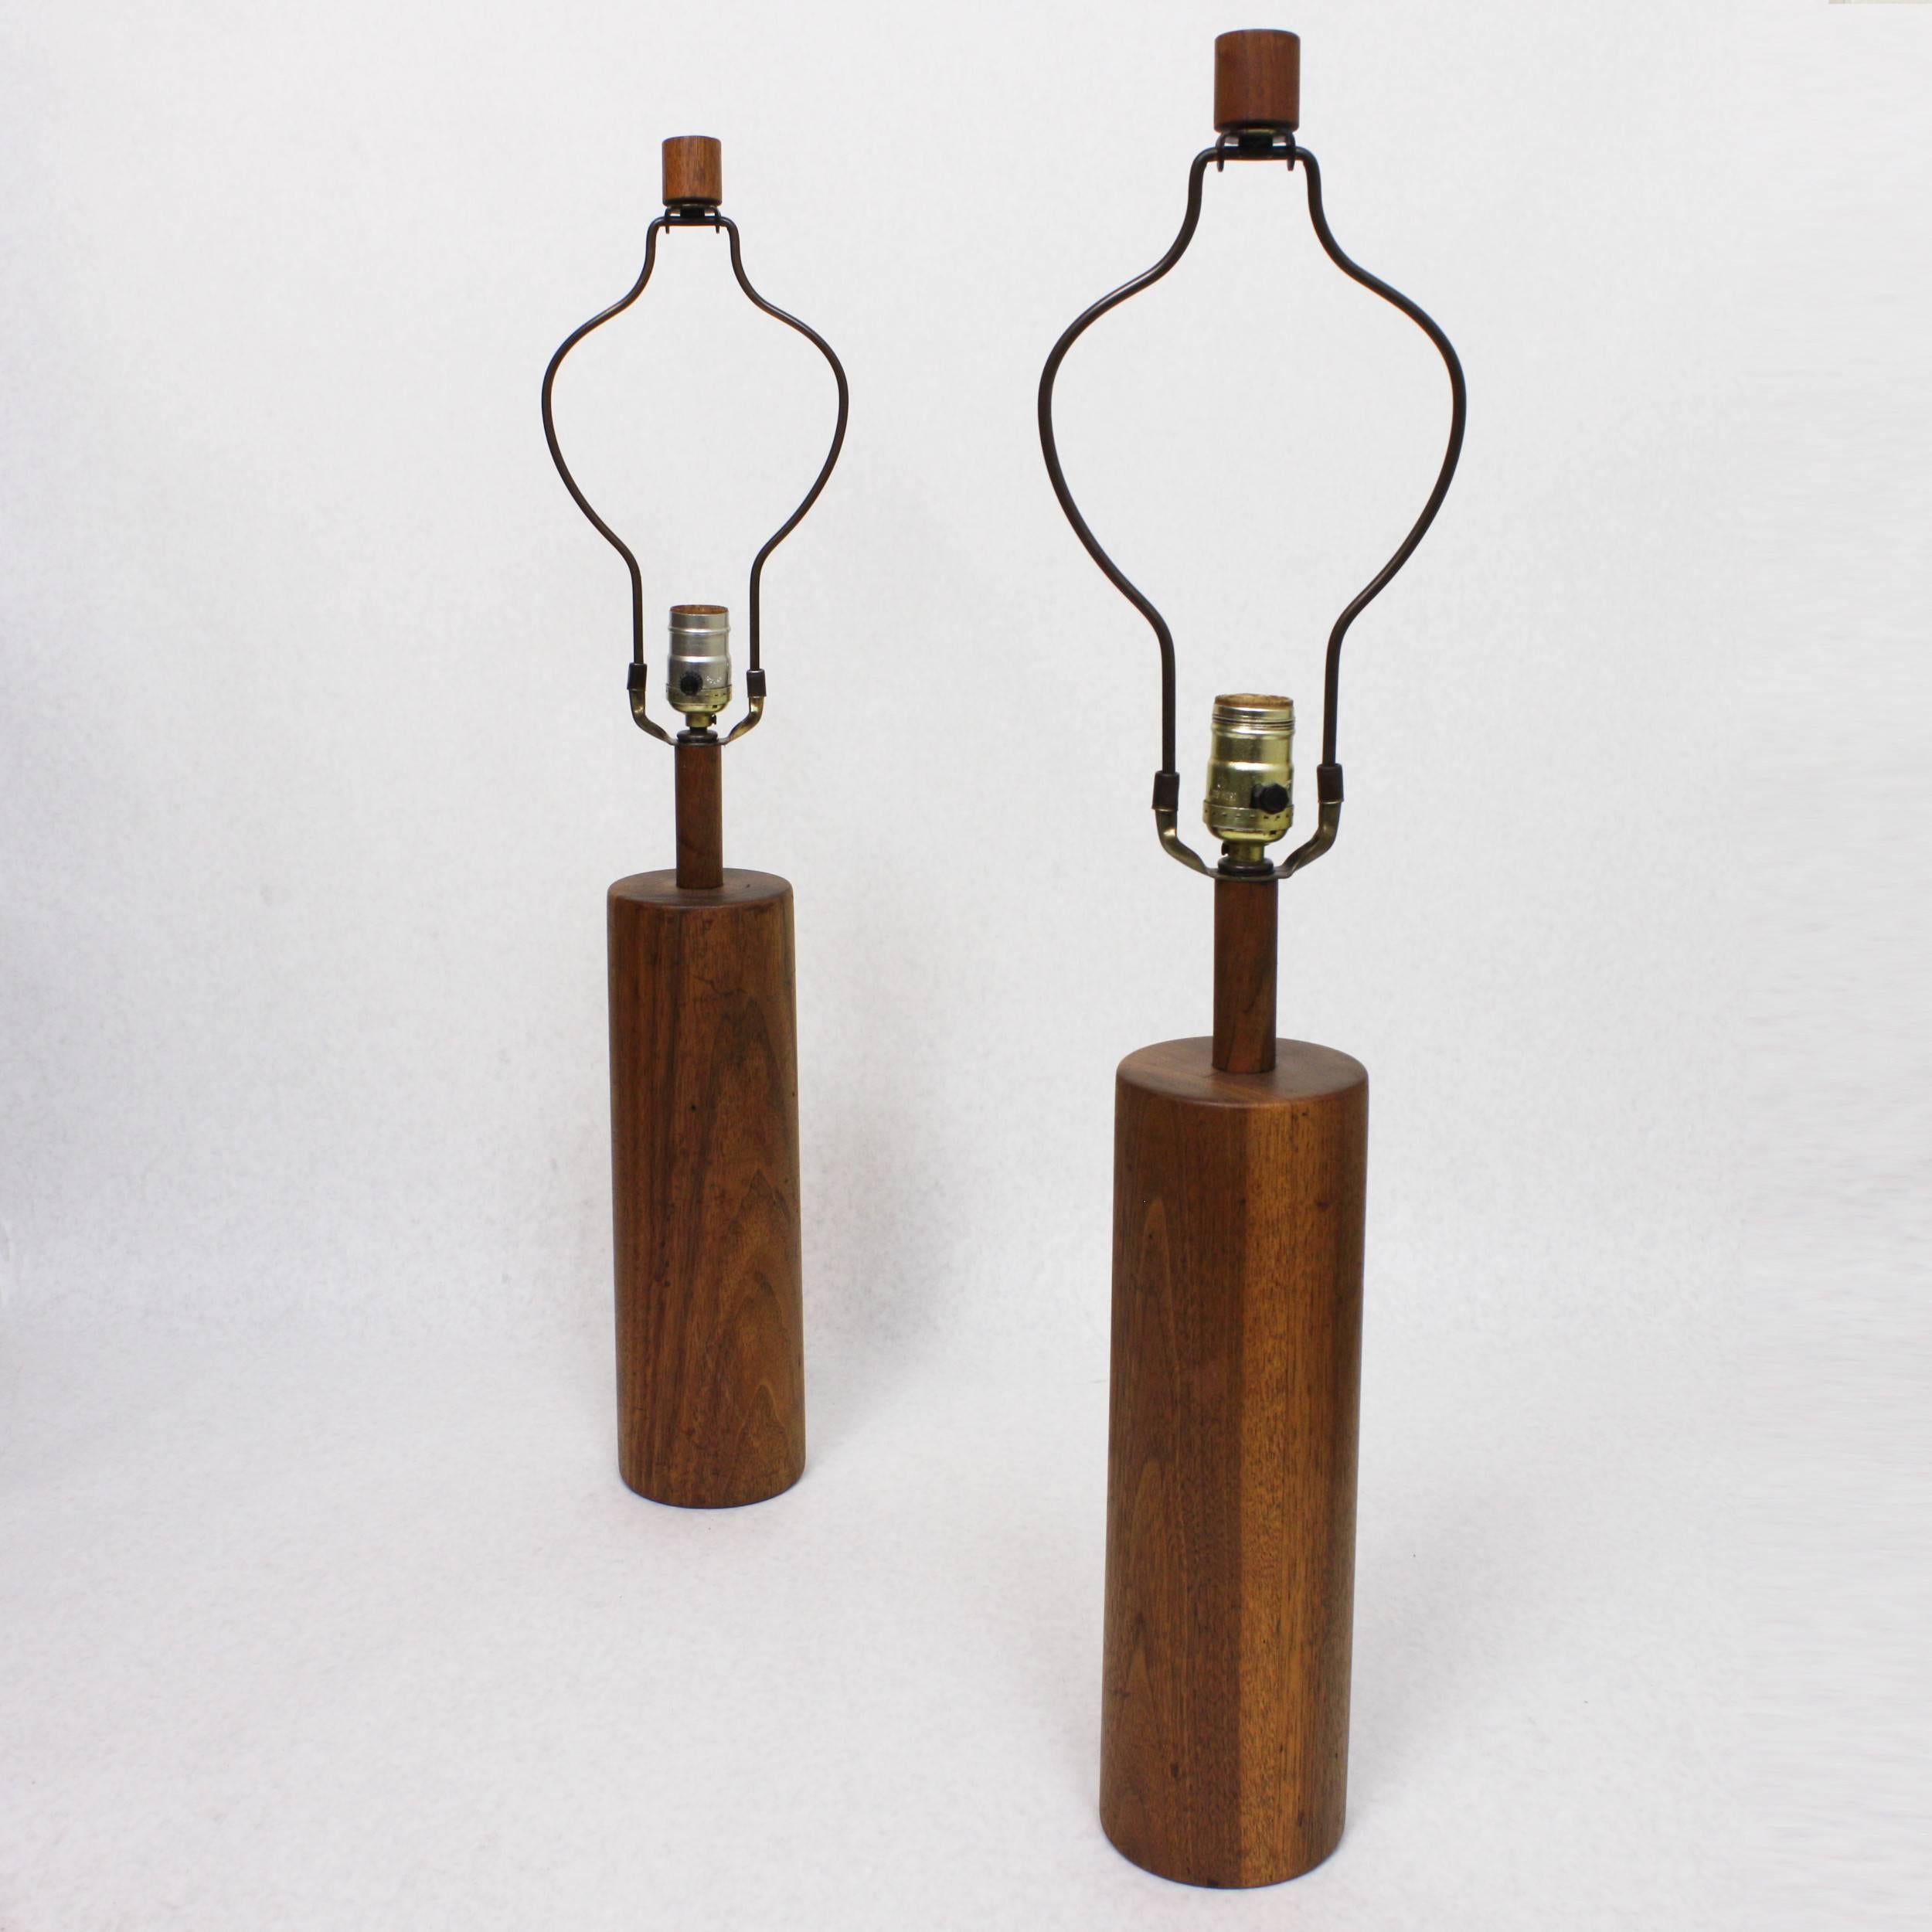 Ce magnifique ensemble de lampes de table W31-28 a été conçu par Gordon & Jane Martz et fabriqué dans leurs Marshall Studios à Veedersburg, IN. Les lampes sont dotées d'un corps, d'un col et d'un embout en noyer massif tourné. Un merveilleux exemple